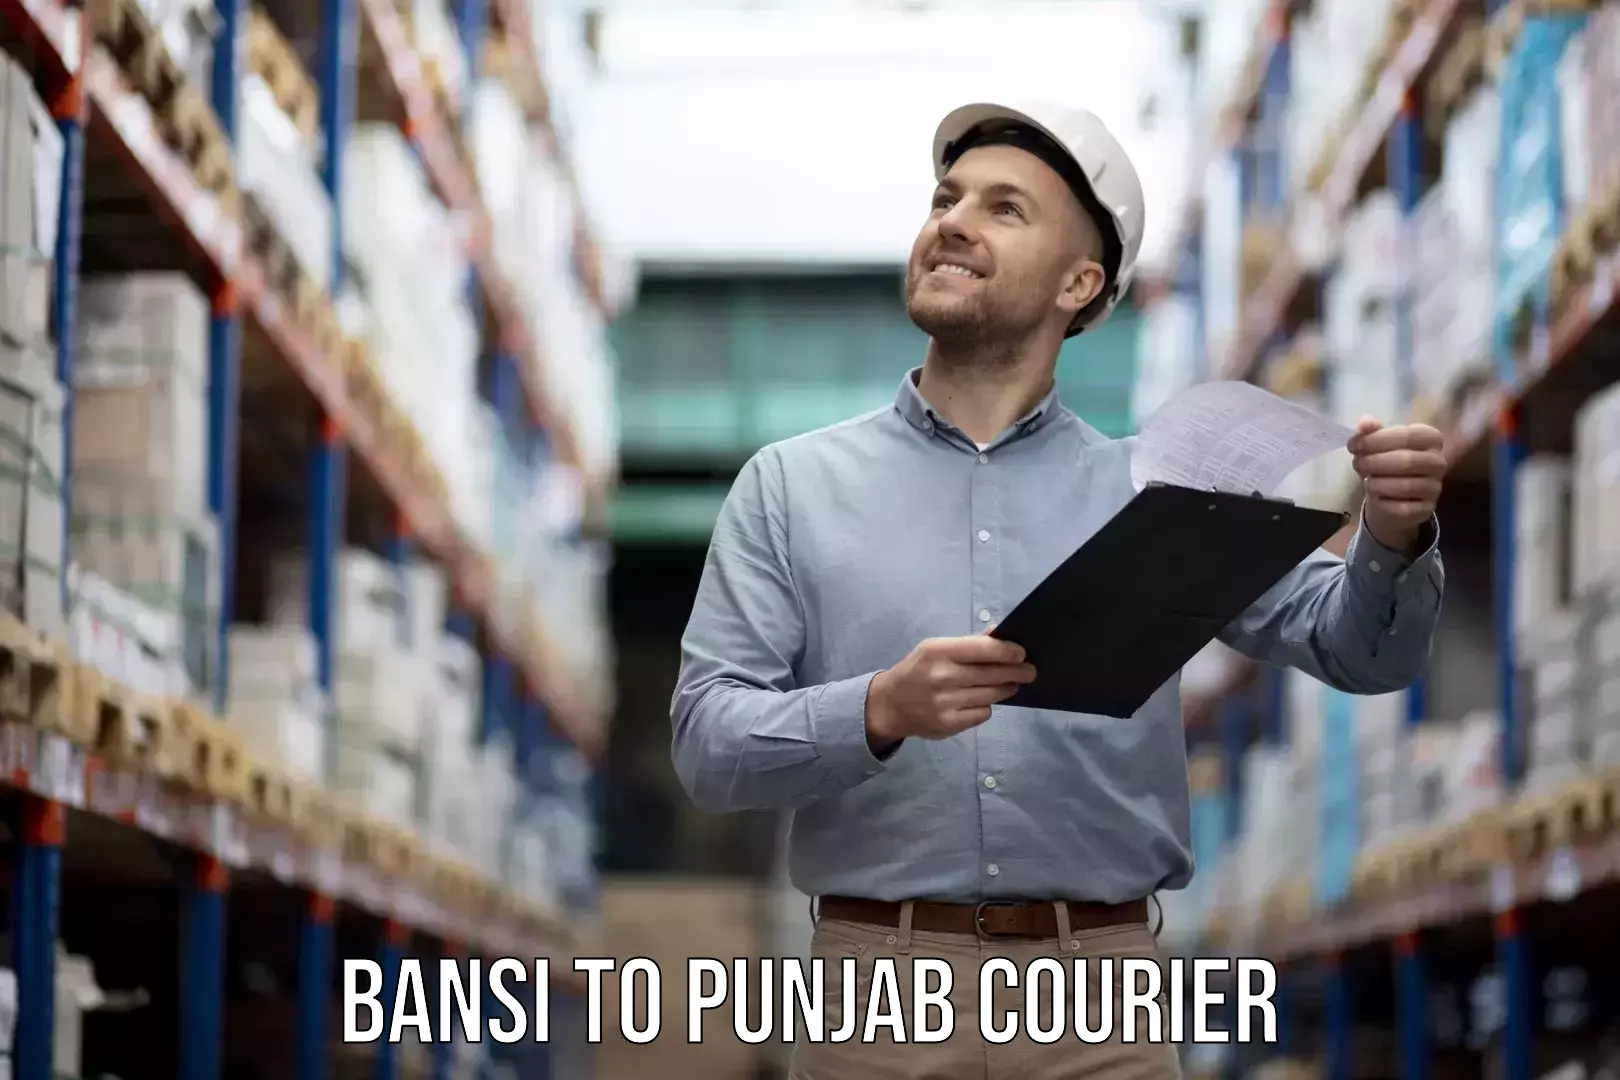 Furniture moving services in Bansi to Punjab